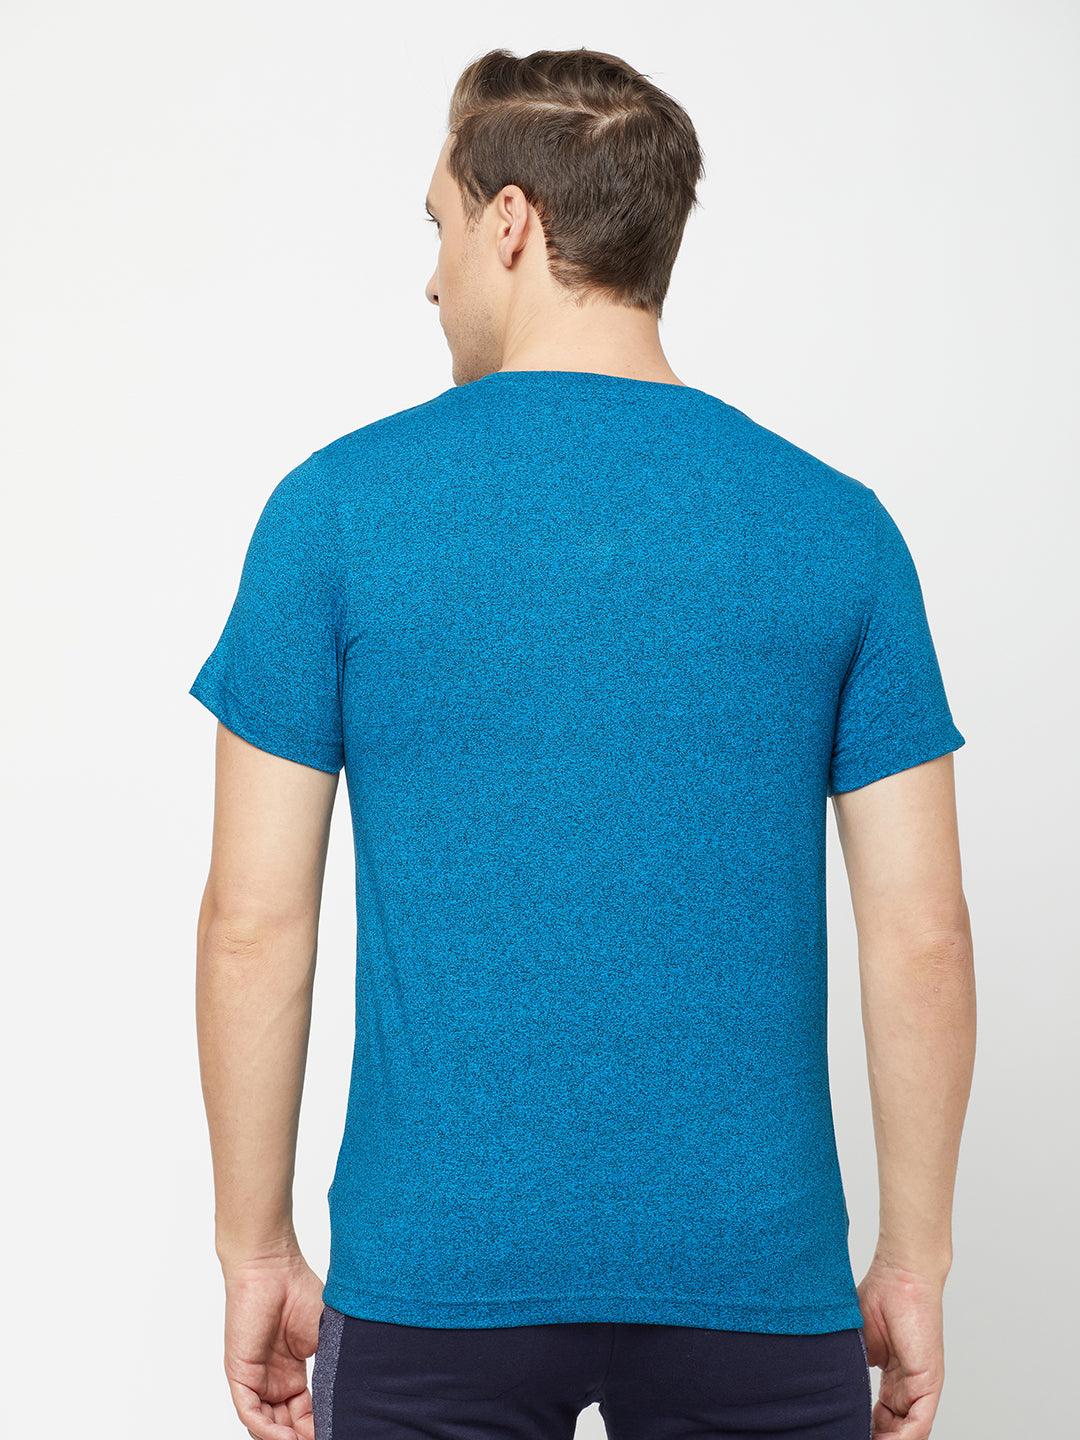 Sporto Men's V Neck T-Shirt - Sapphire Blue Jaspe